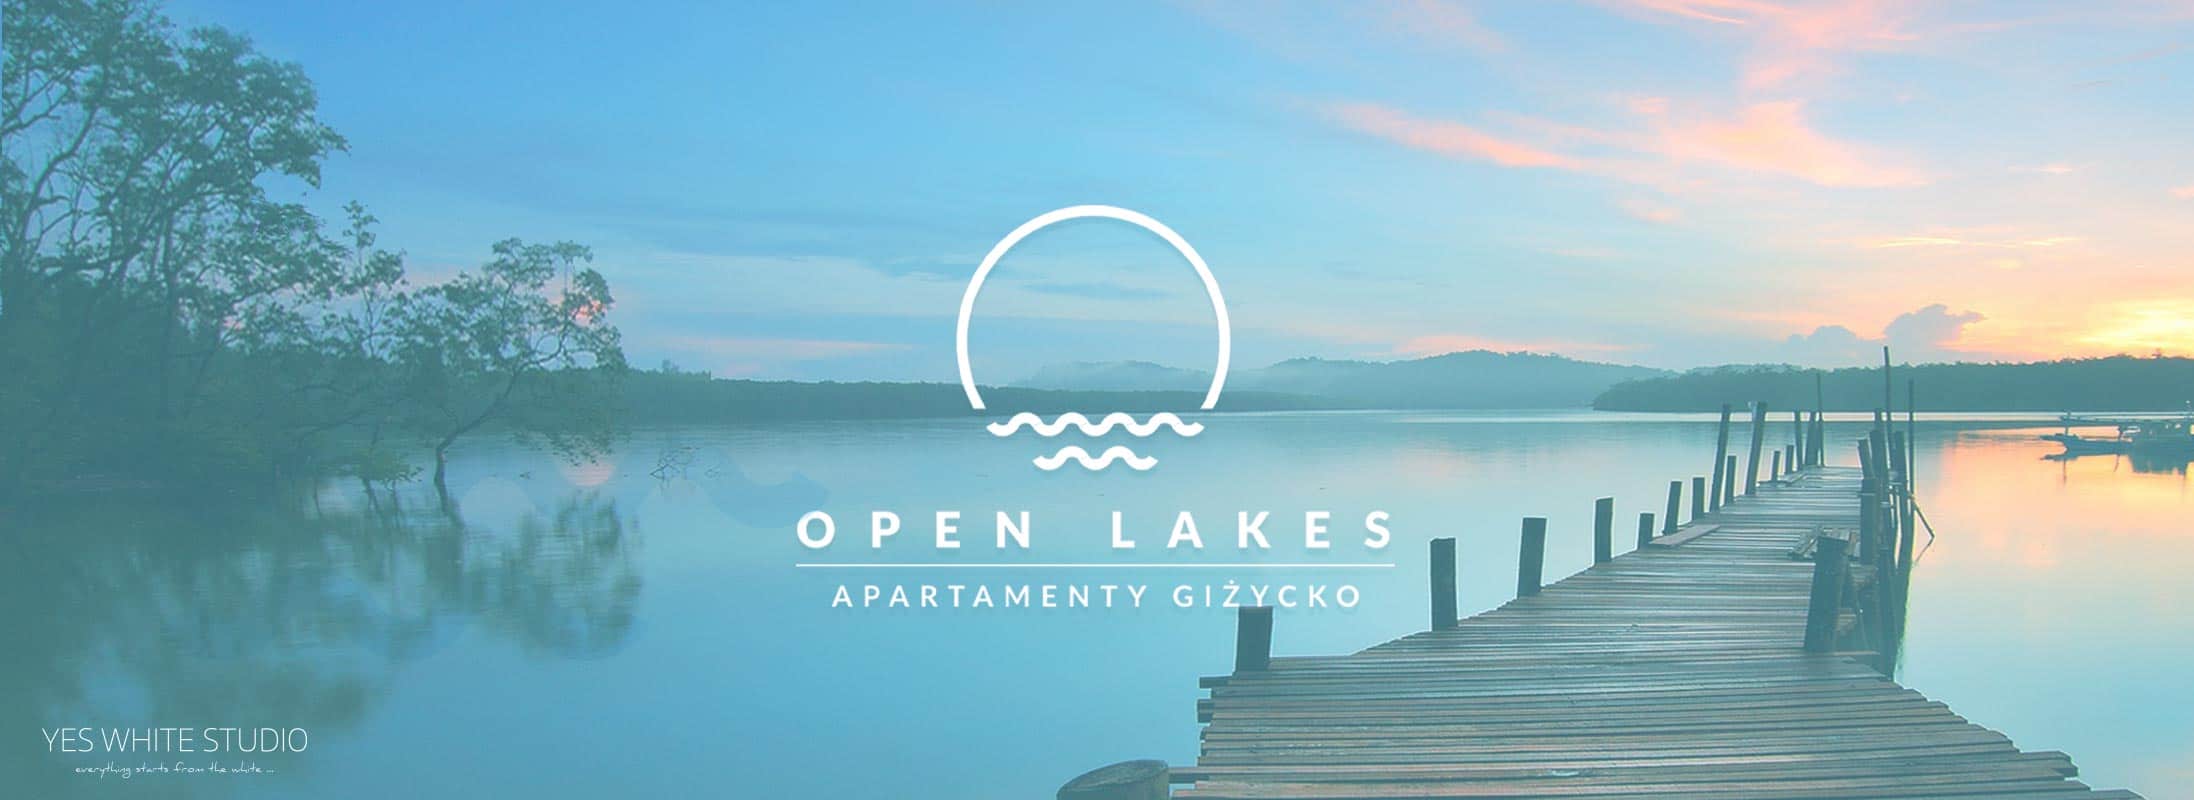 Projektowanie logo Giżycko - Projekt nowe logo Open Lakes Apartamenty Giżycko - Branding, Identyfikacja Wizualna